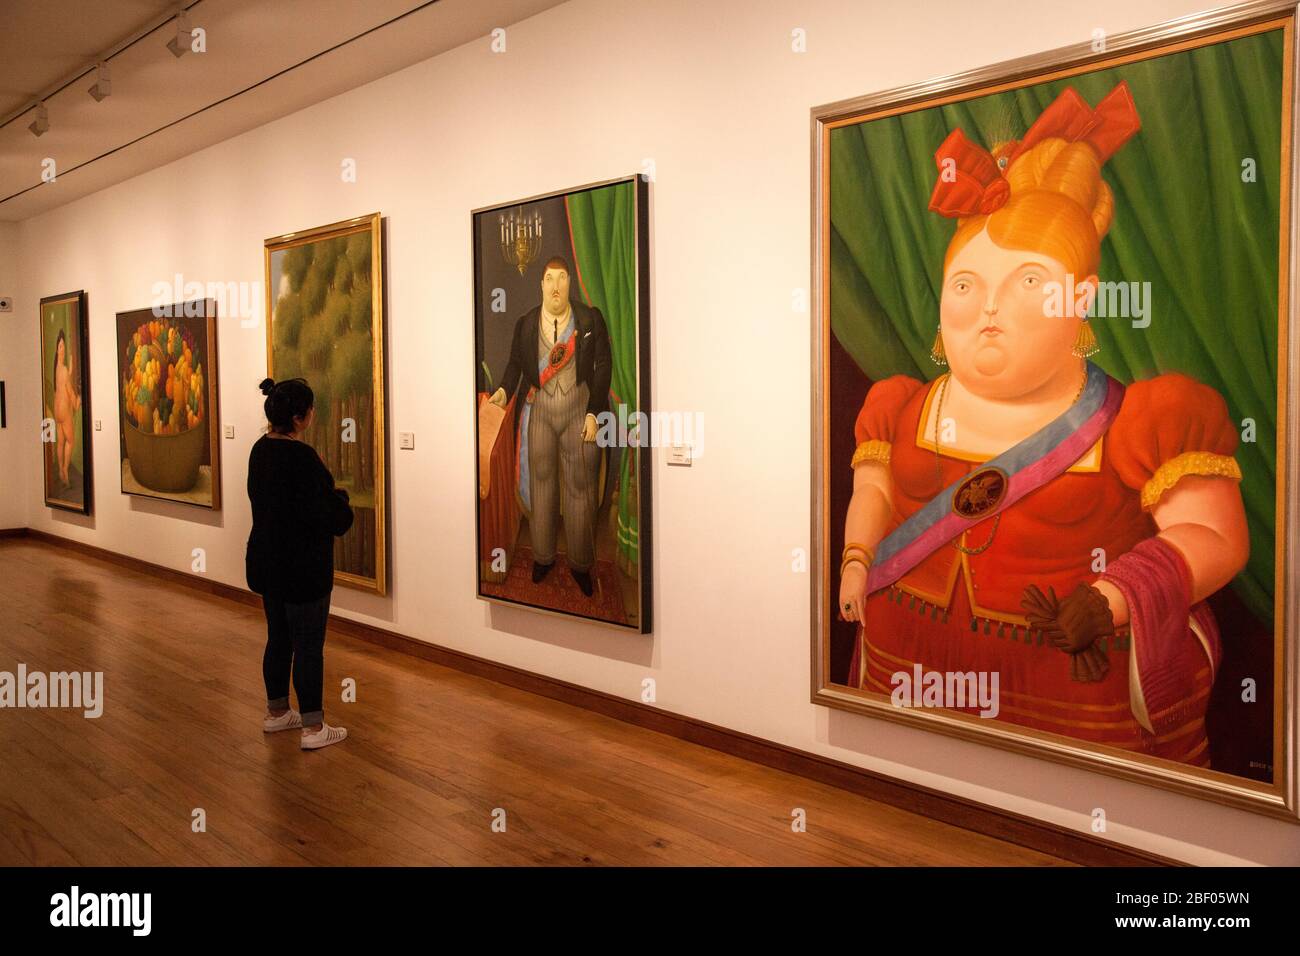 Admiradores admirando la primera dama, pintura de Botero en una galería del Museo Botero, también conocido como Museo Botero, Bogotá, Colombia. Foto de stock